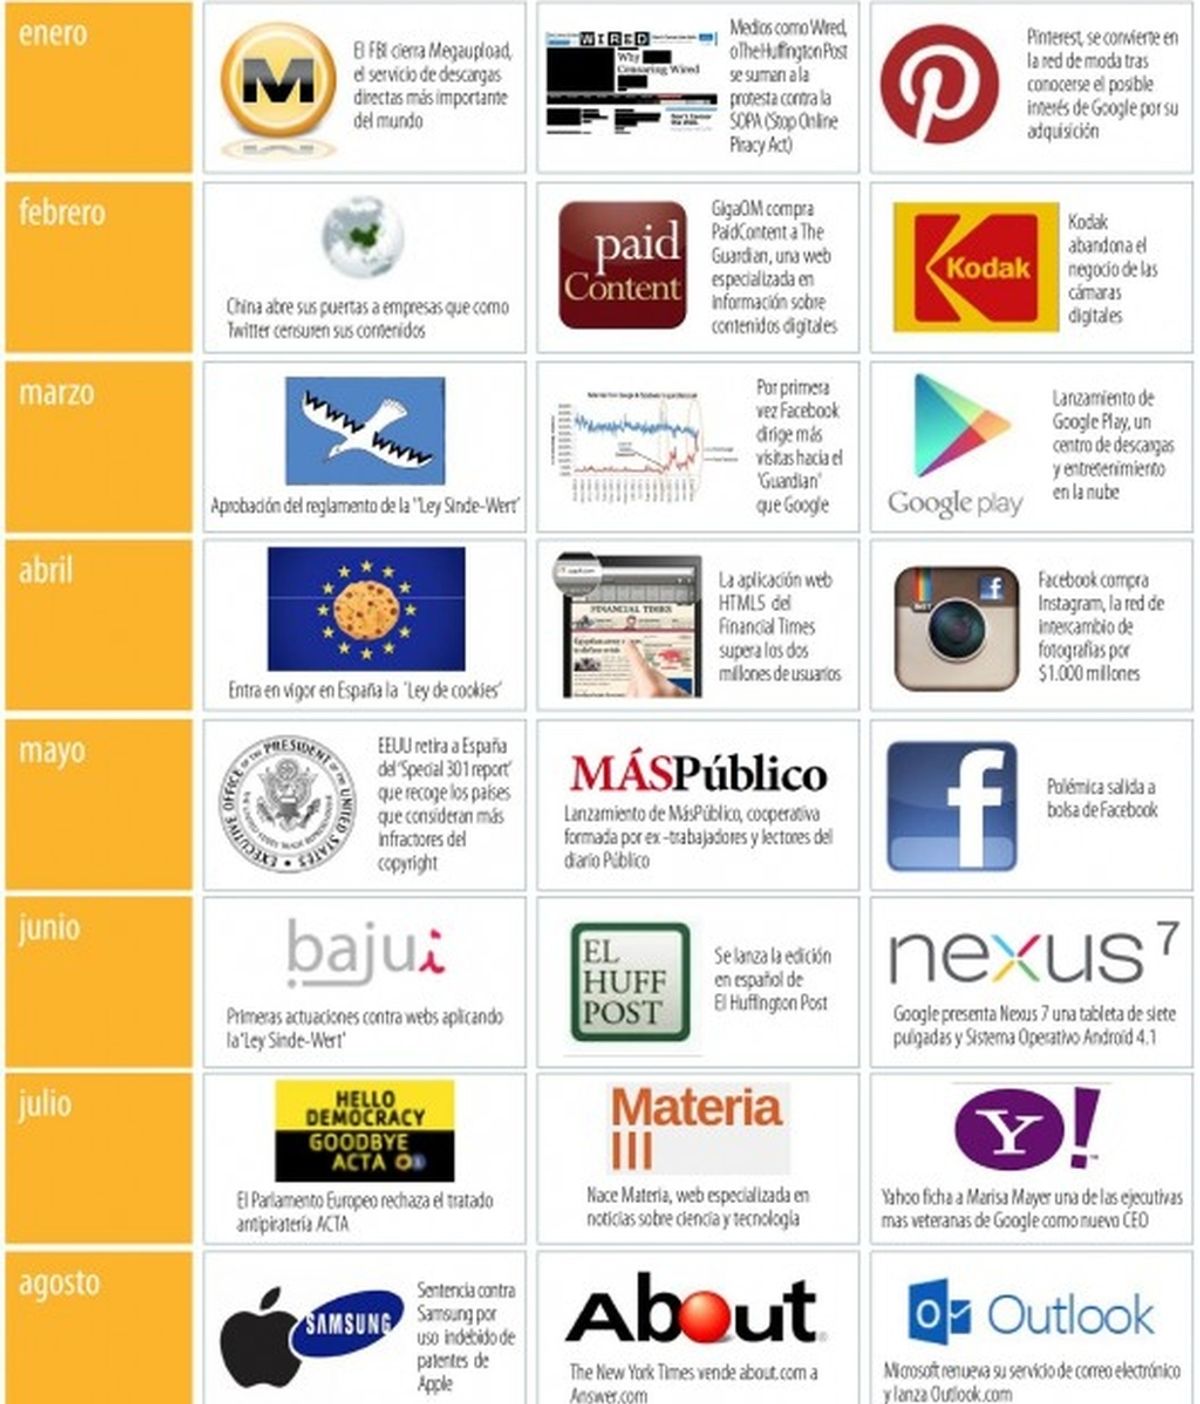 Resumen digital de 2012